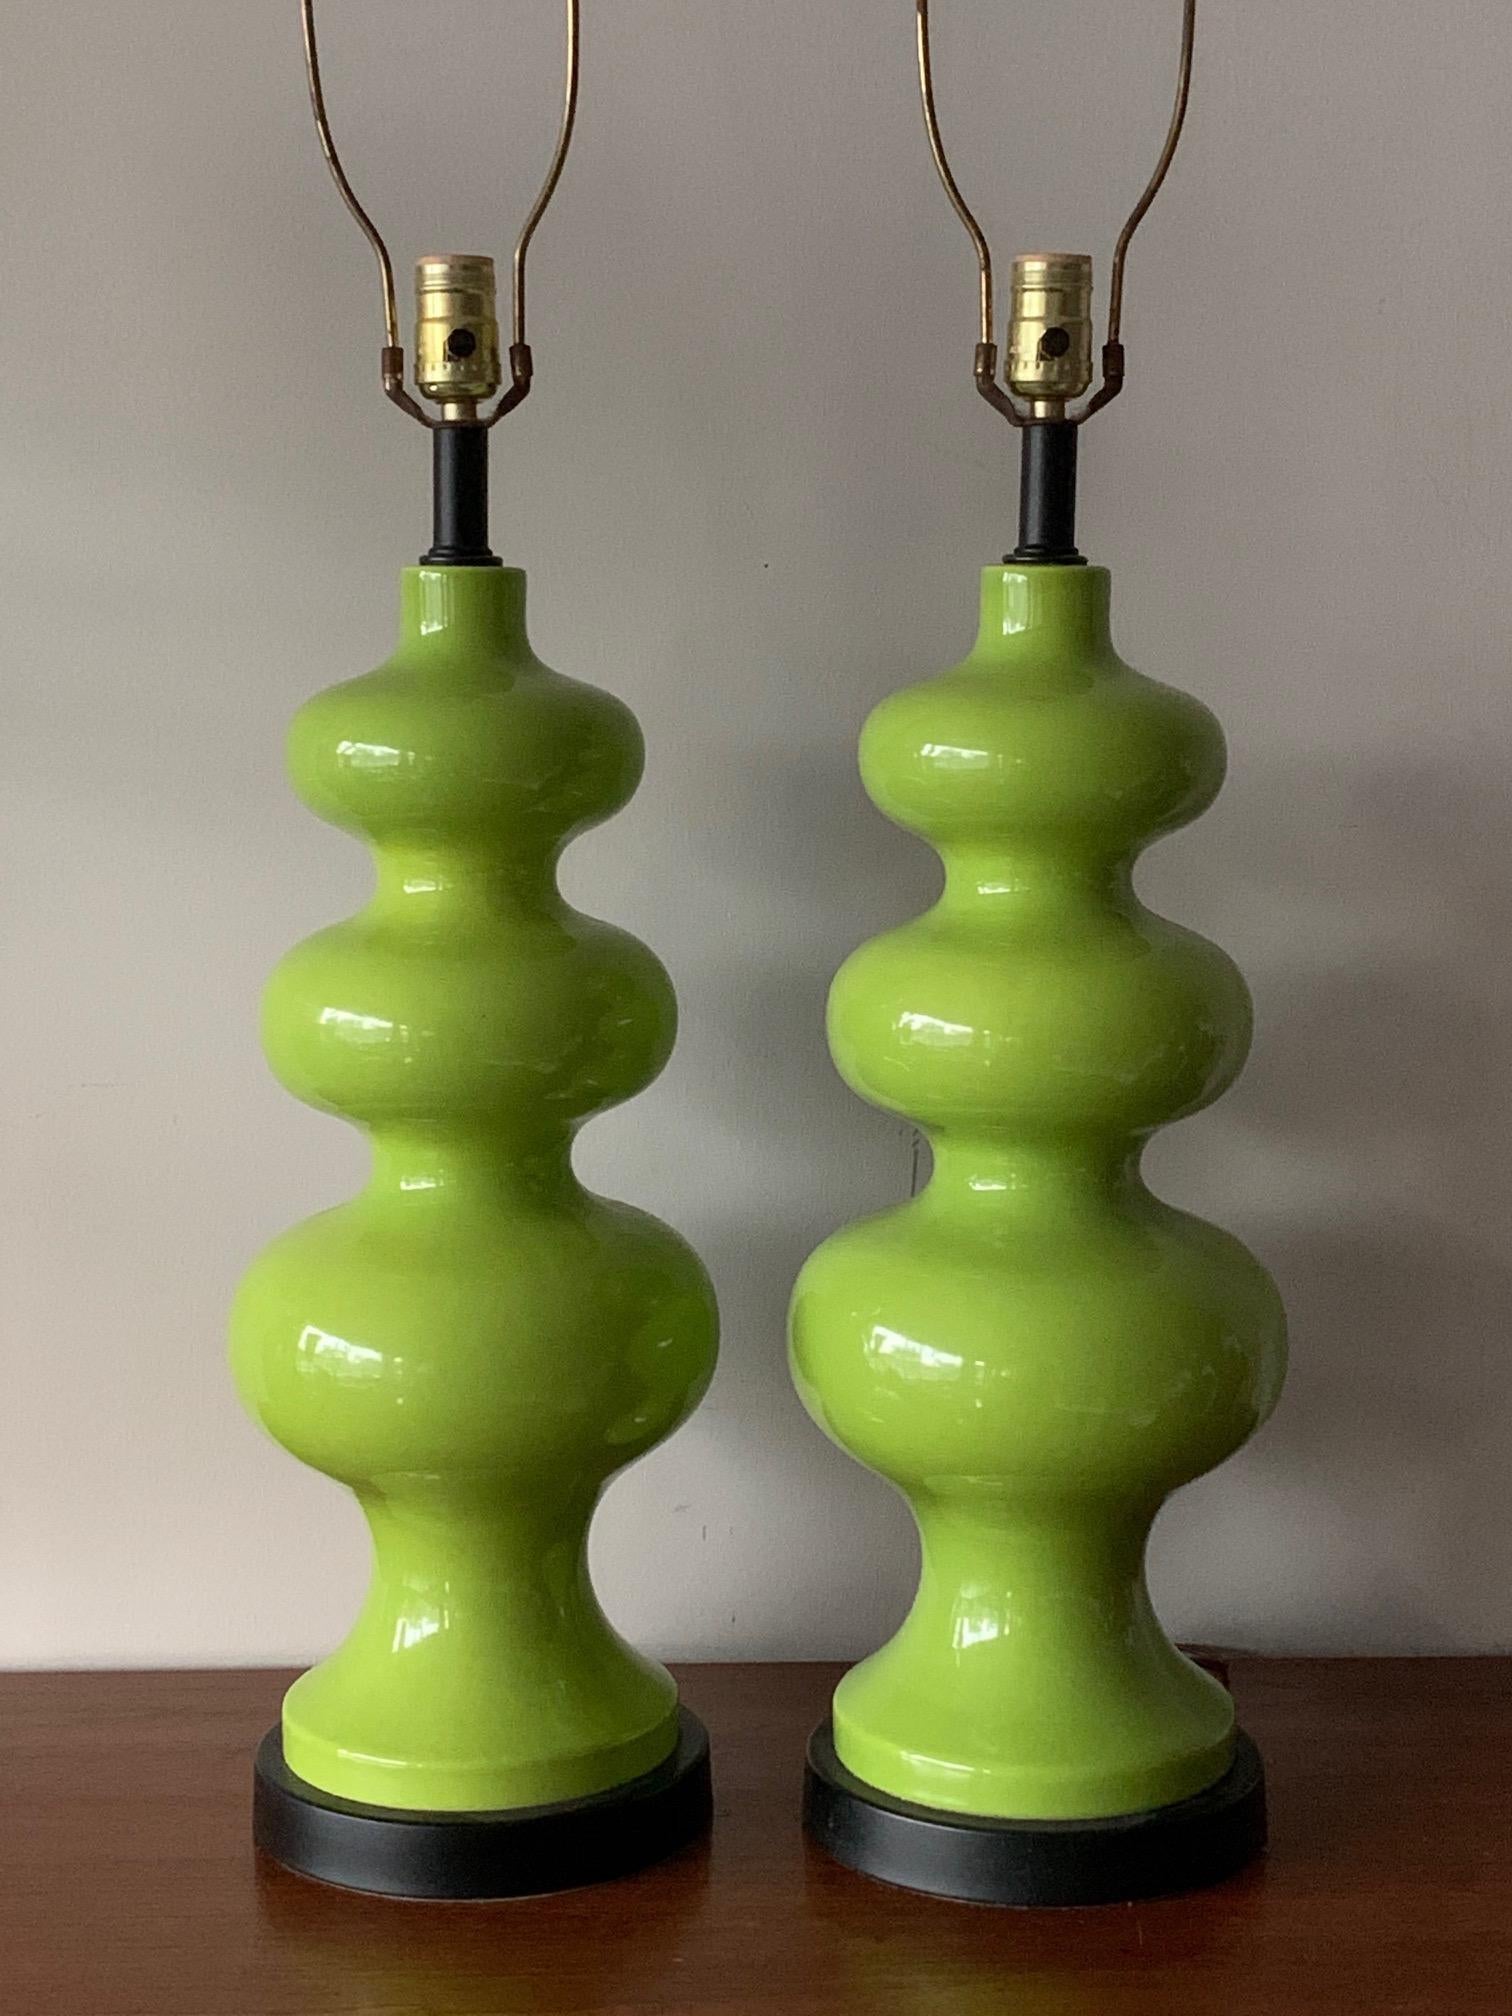 Une paire de lampes sculpturales des années 1970 - couleur vert menthe étonnante, toutes originales avec des abat-jour verts assortis.
Ils sont grands et très impressionnants - une trouvaille rare ! Hauteur totale avec les abat-jour 41.5